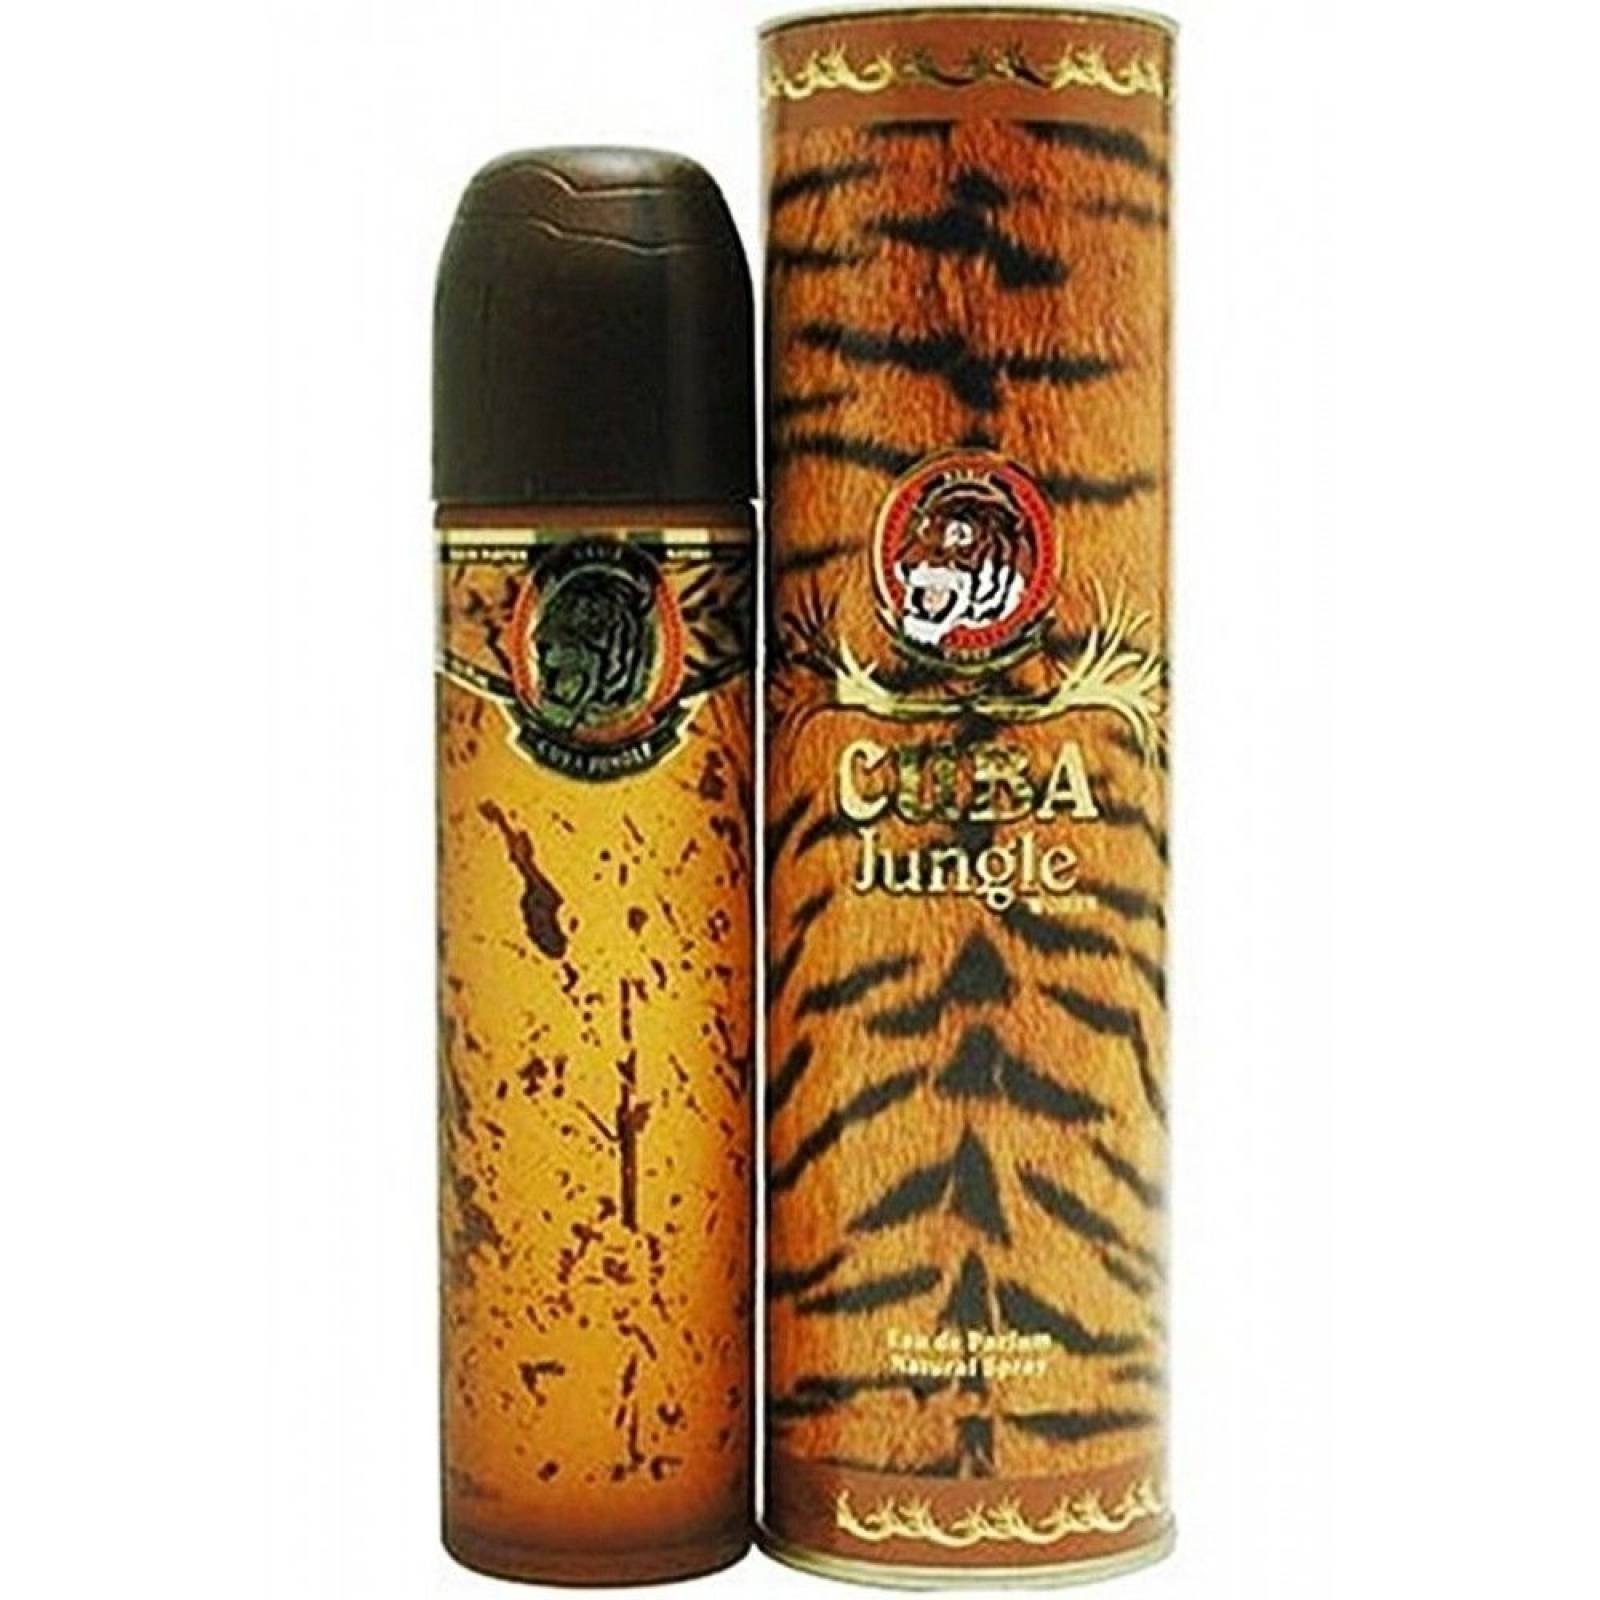 Jungle Tigger De Cuba Paris Eau de Parfum 100 ml